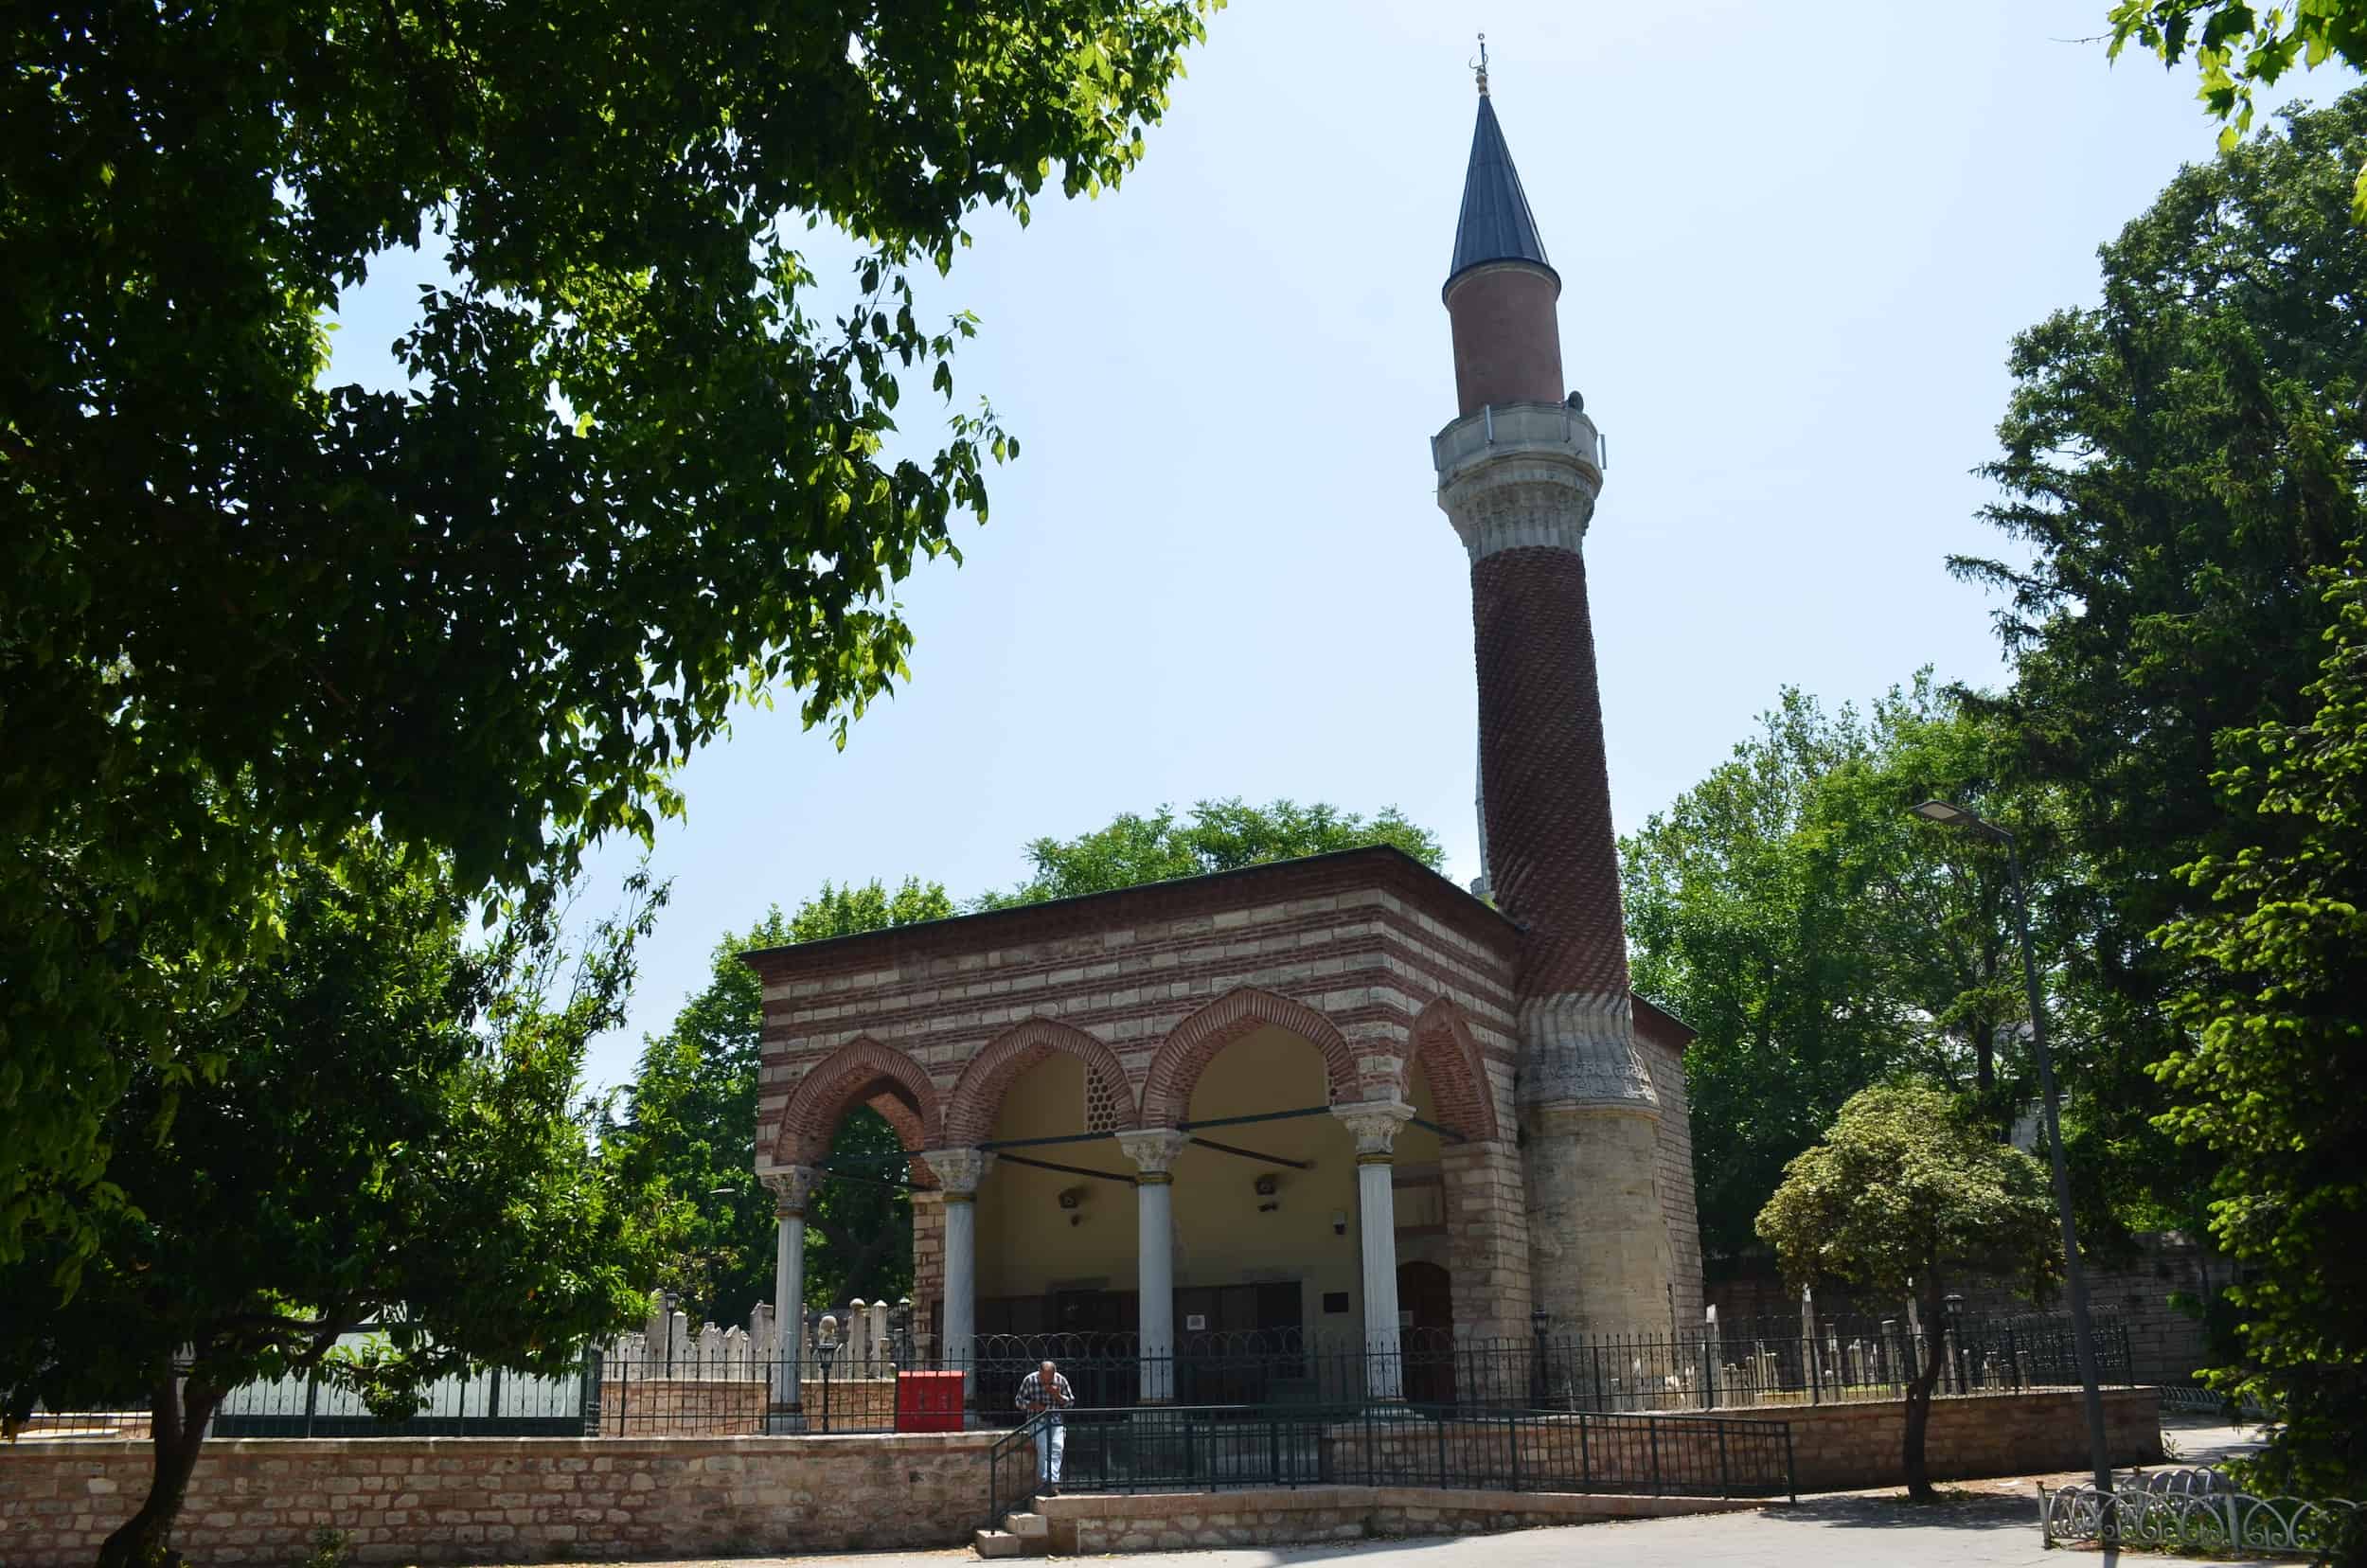 Burmalı Mosque in Saraçhane, Istanbul, Turkey